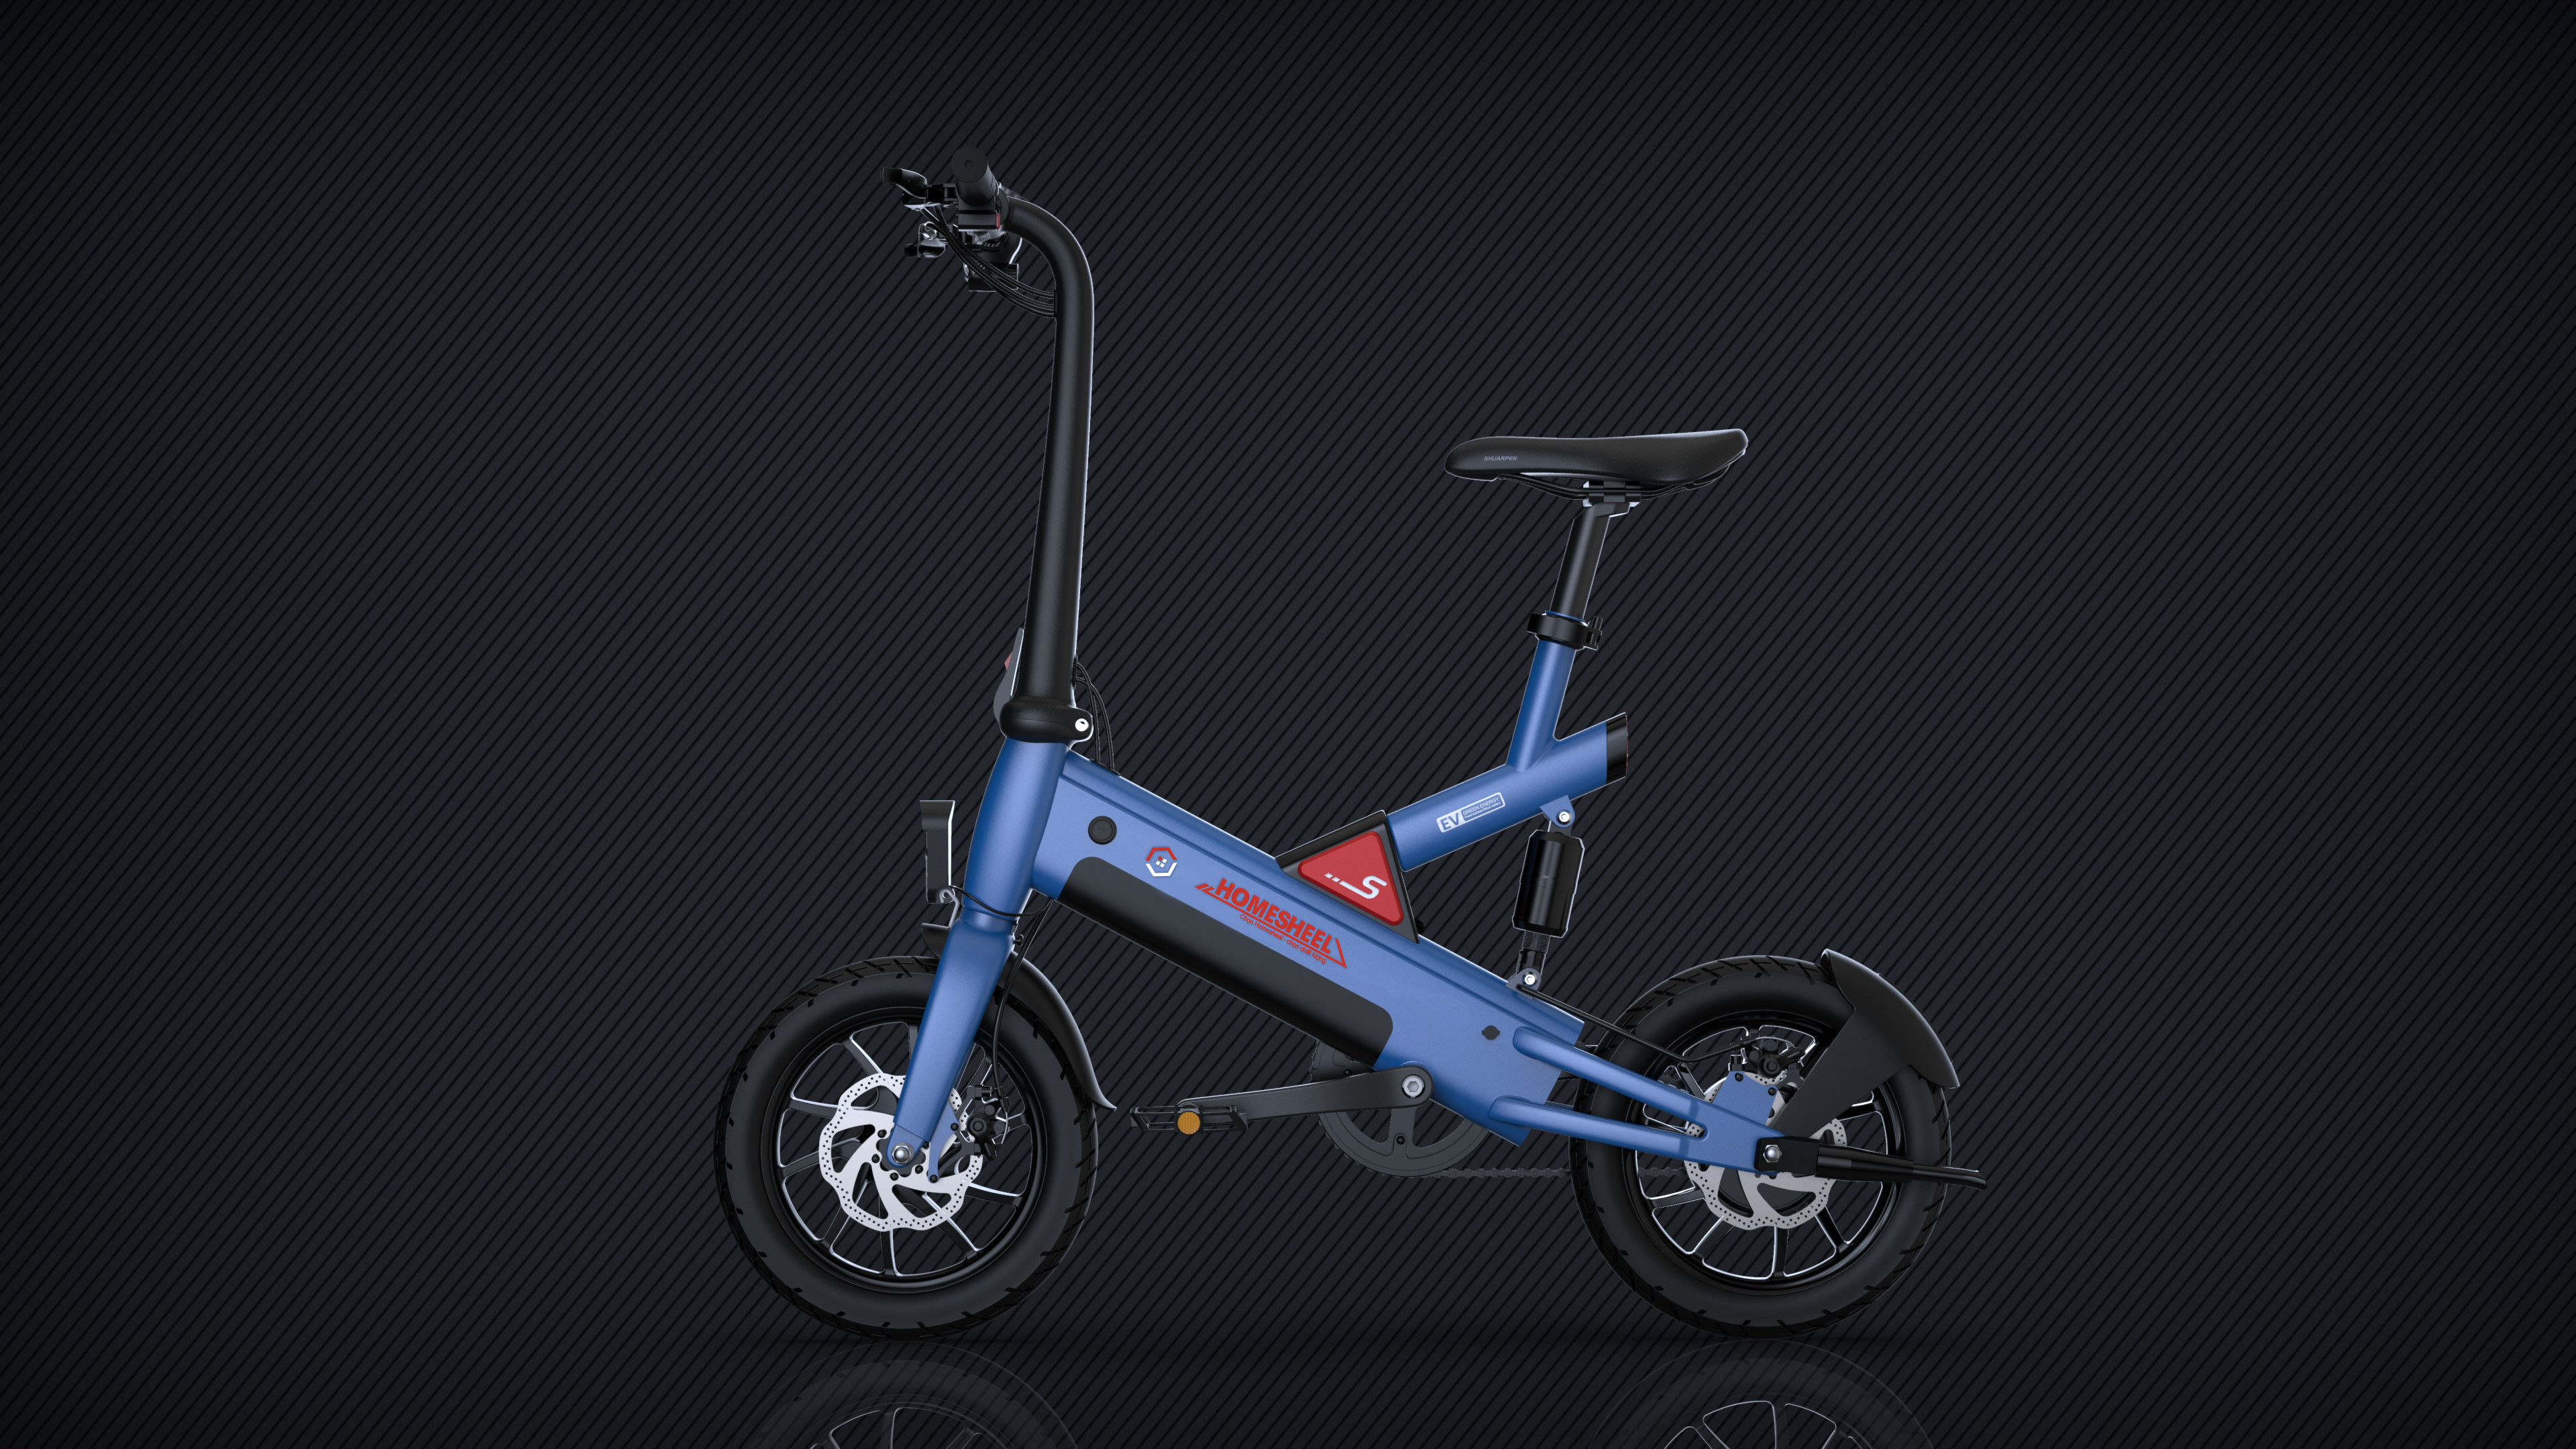 Xe đạp điện trợ lực thông minh Homesheel T6_10Ah Phiên bản mới nhất ( Màu Xanh đen)